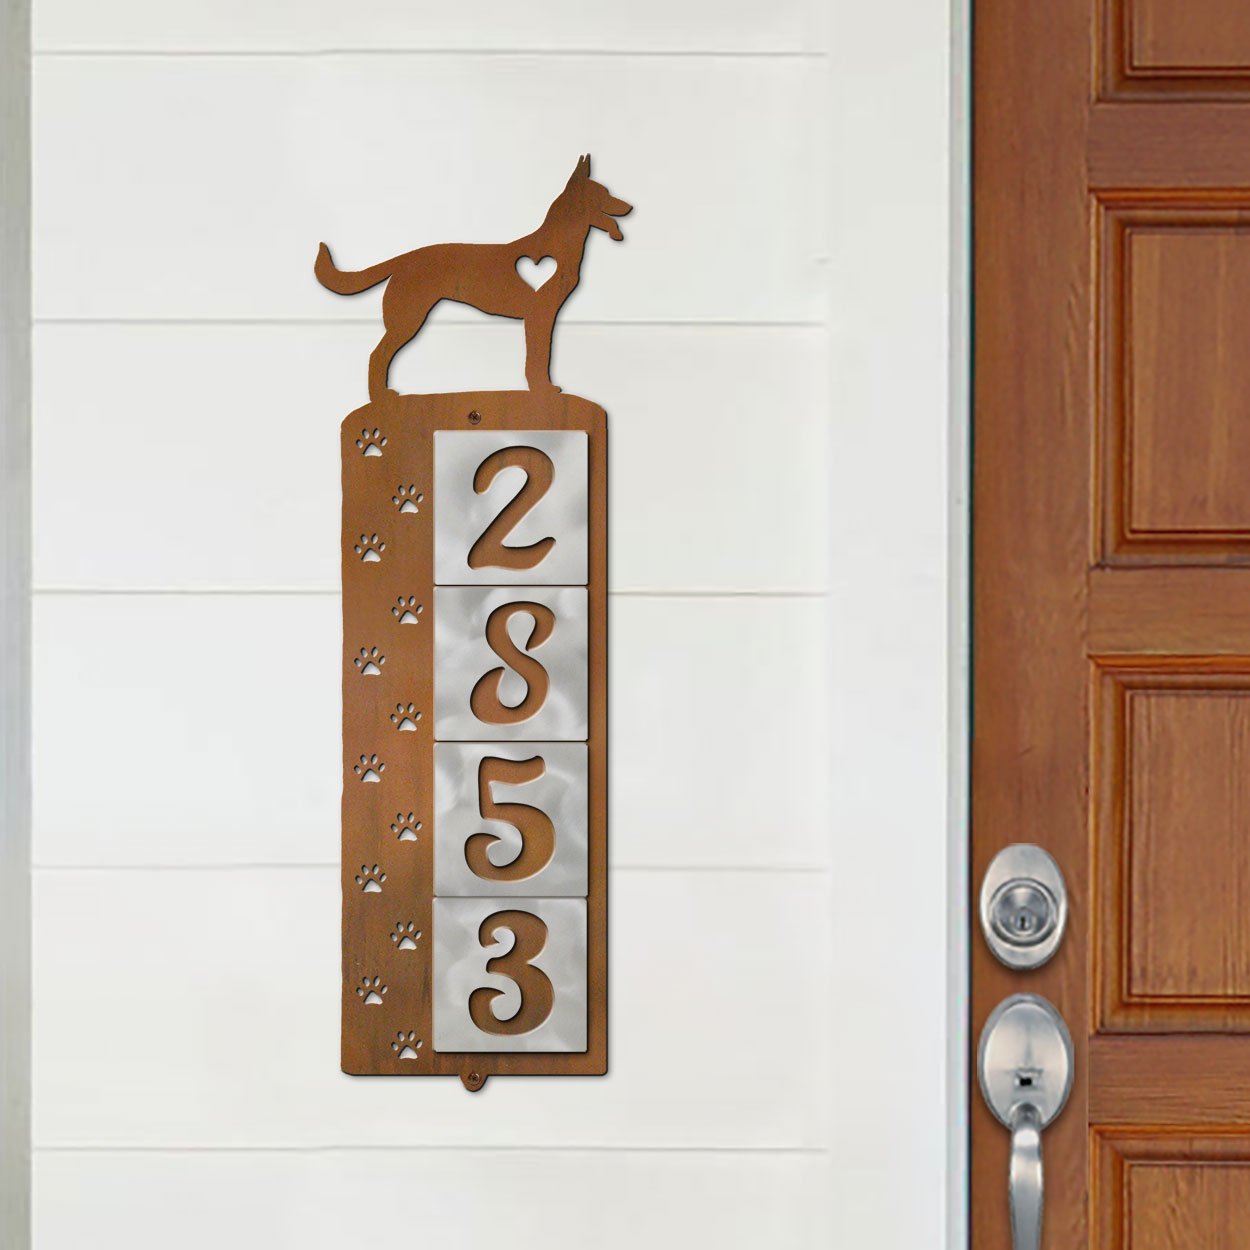 606224 - German Shepherd Nose Prints 4-Digit Vertical Tile House Numbers